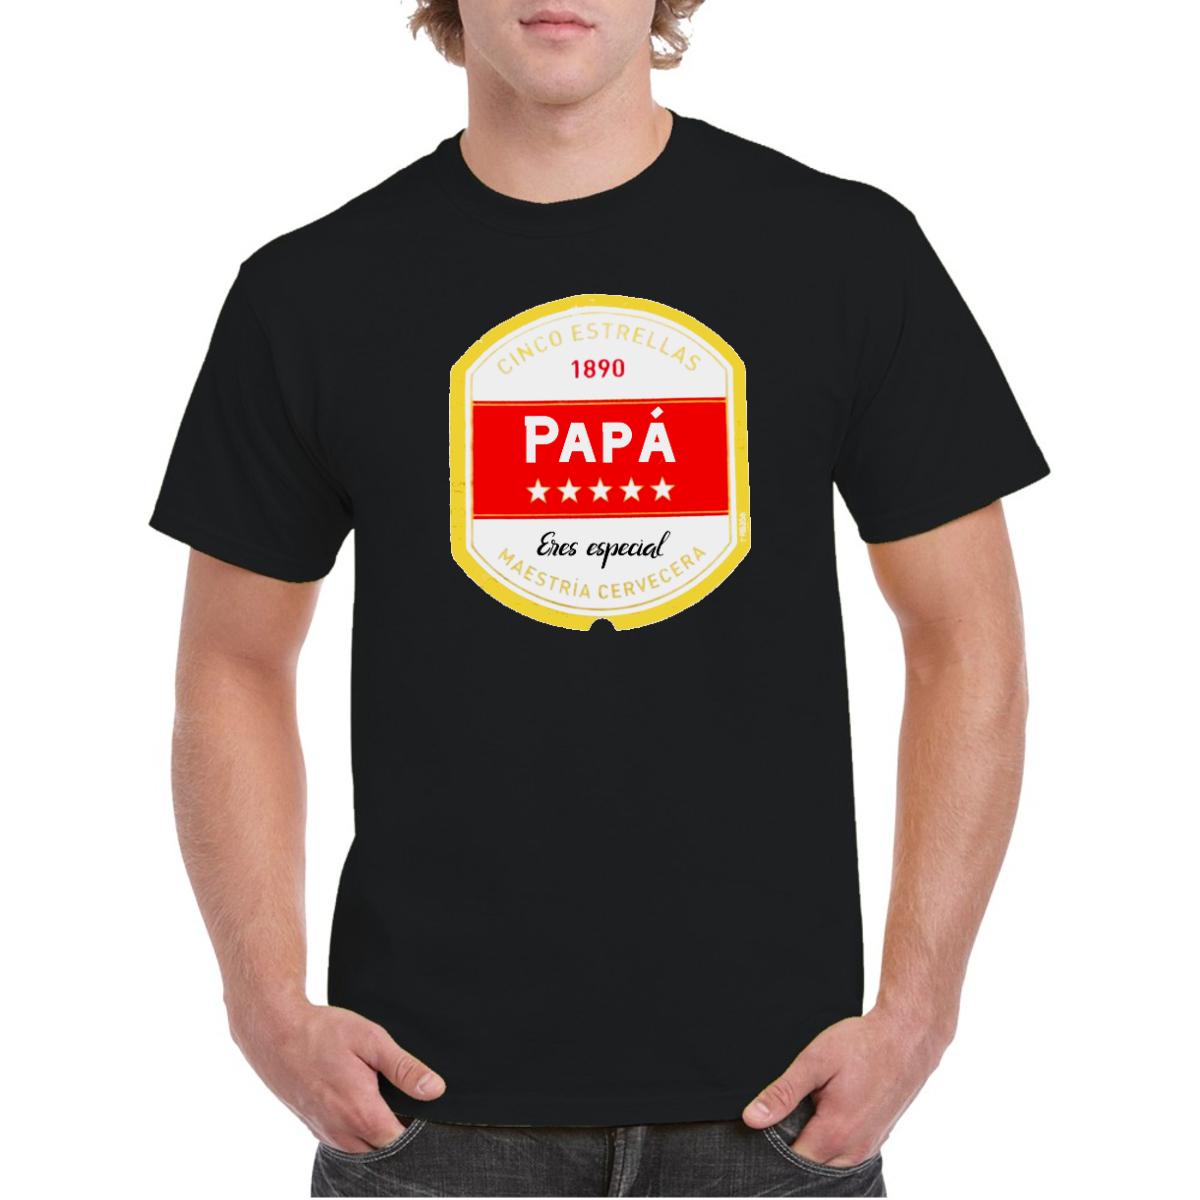 Karu asistente Cíclope Encuentra camiseta personalizada para papá en Complementos E&E día del padre